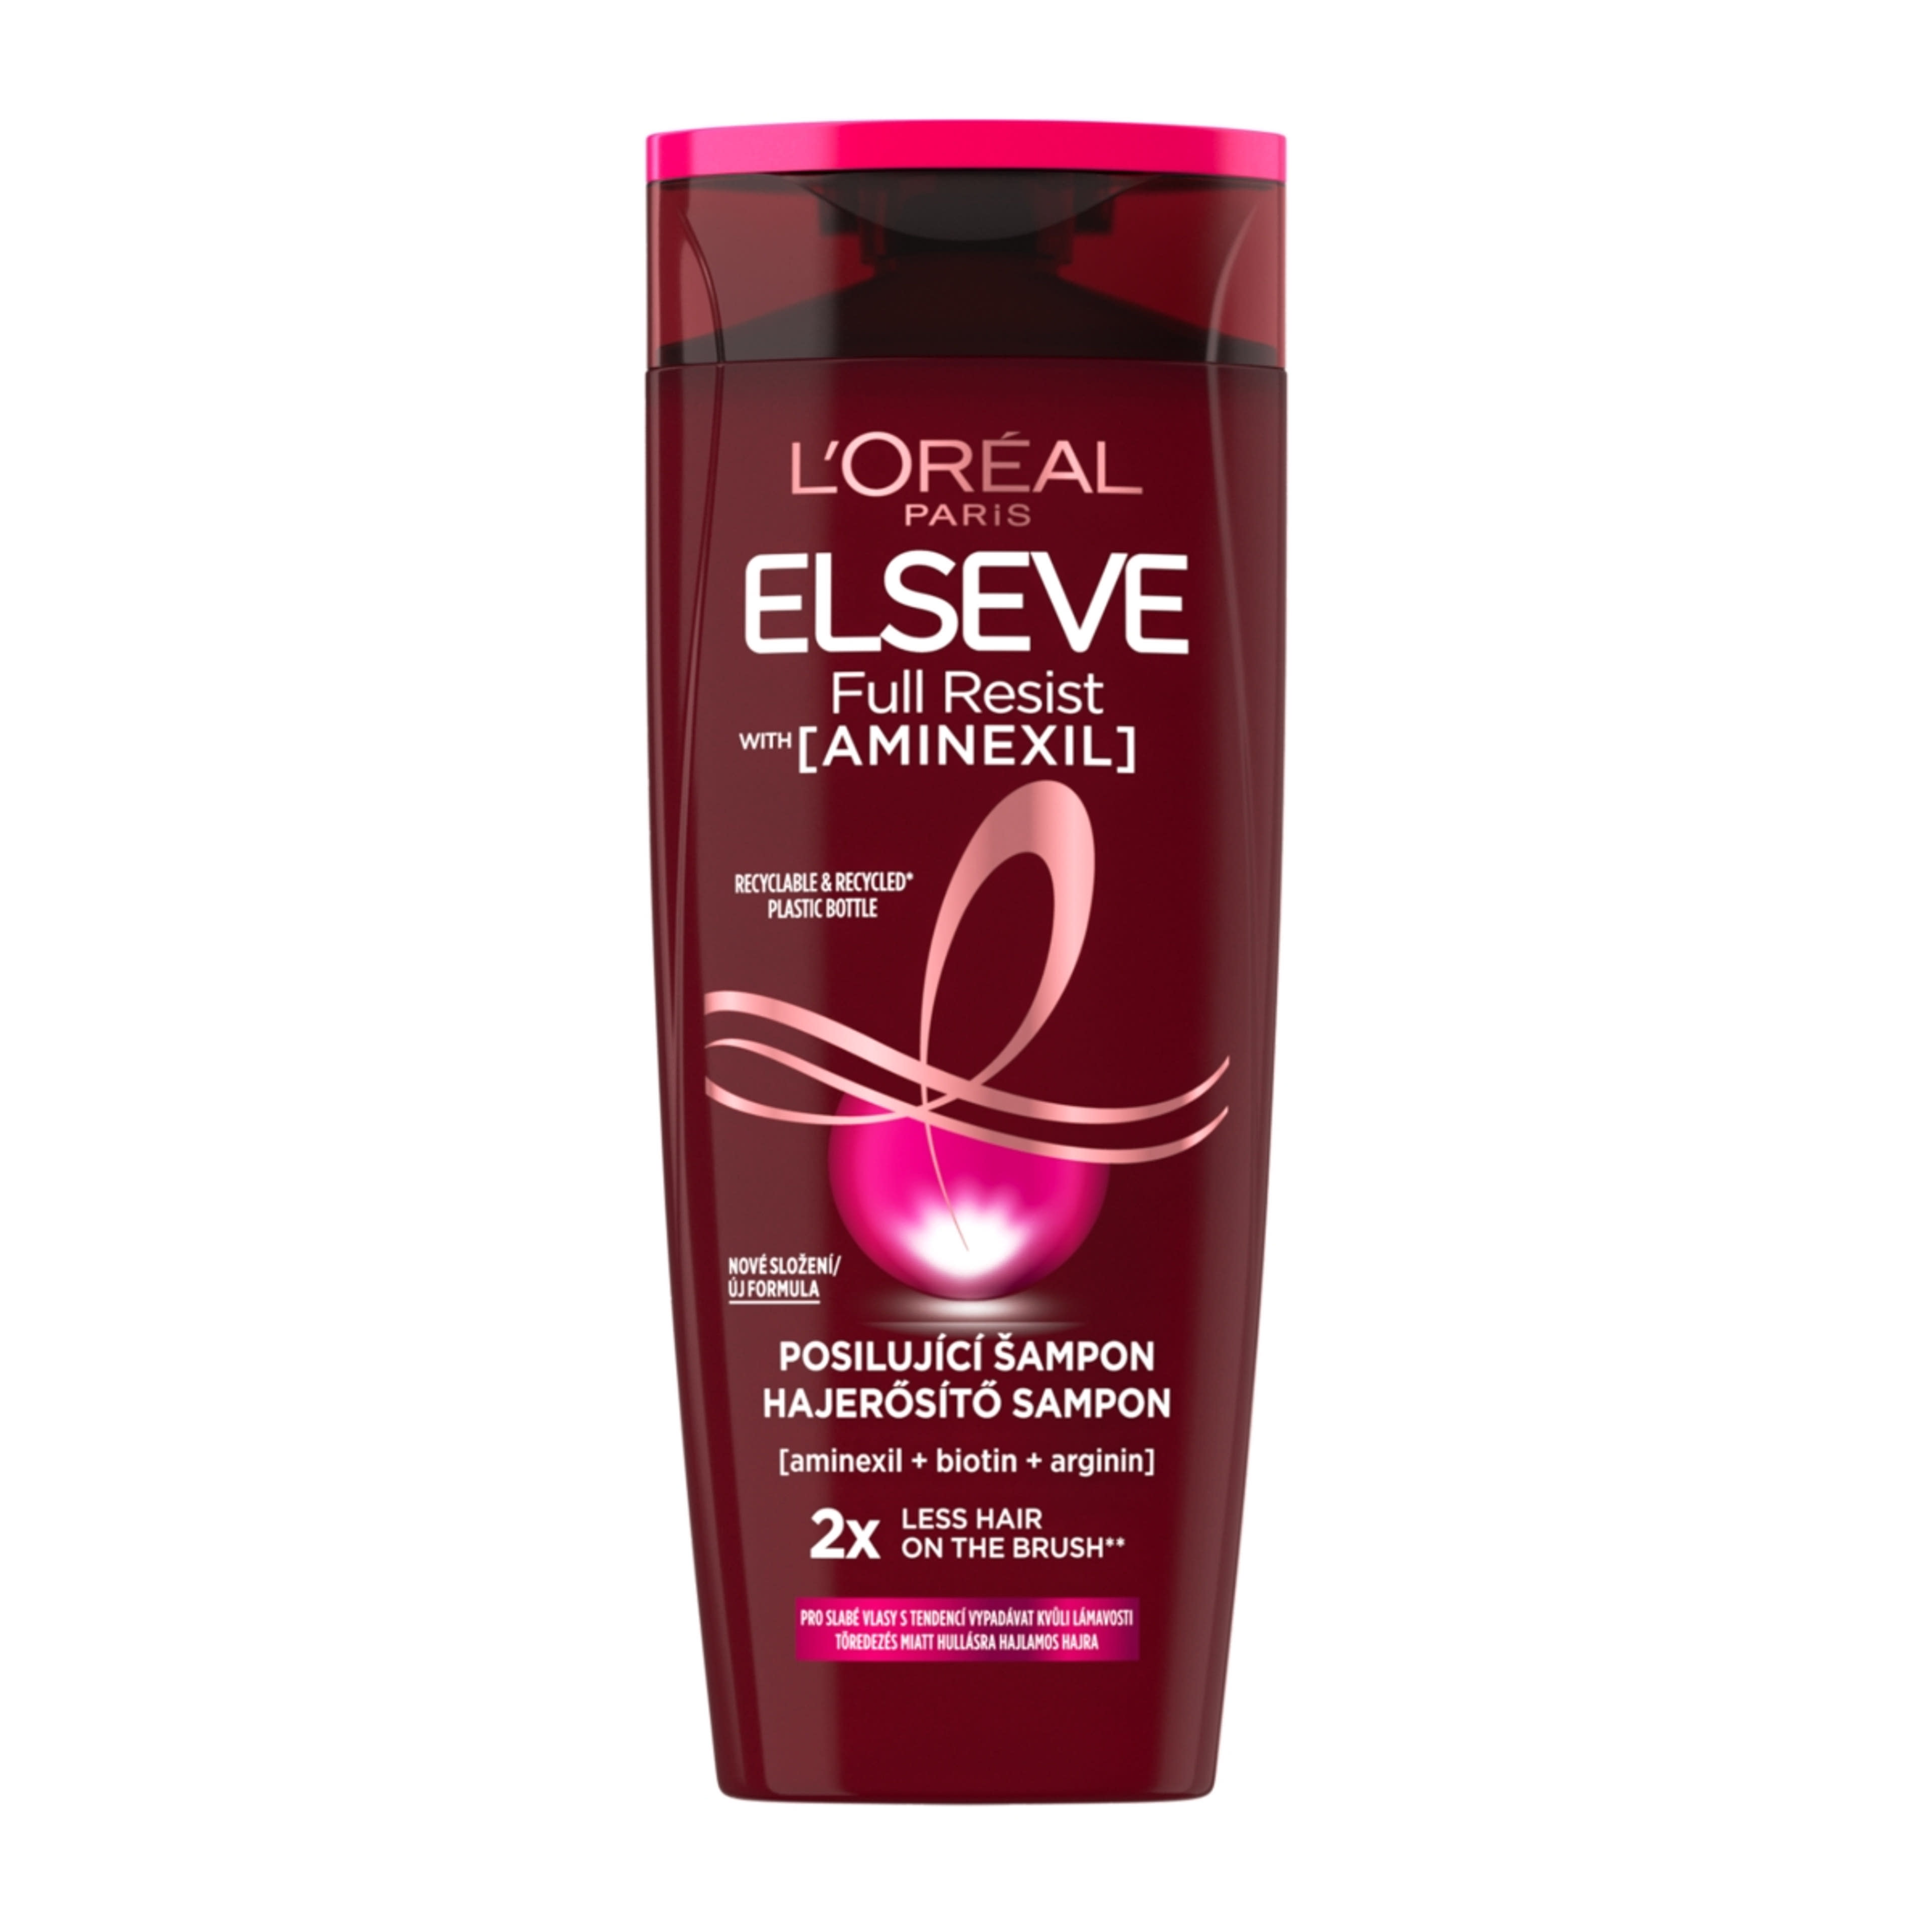 L'Oréal Paris Elseve Full Resist hajerősítő sampon - 250 ml